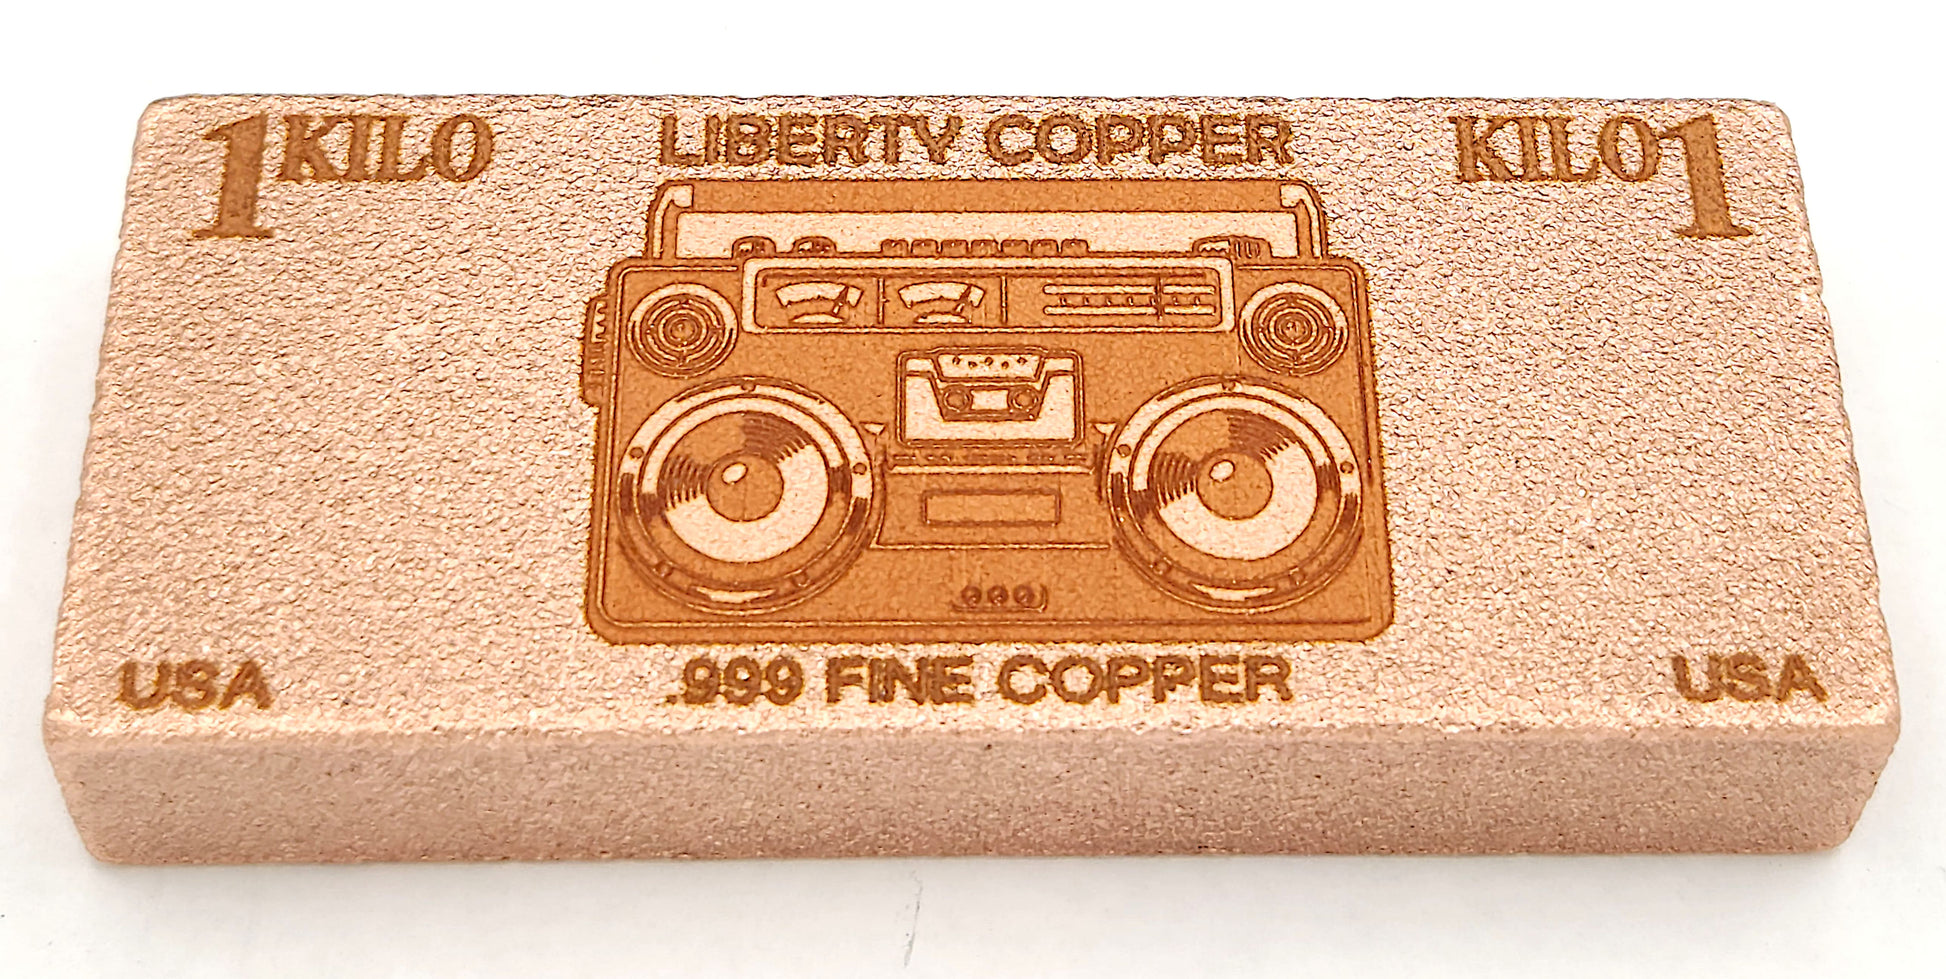 Retro Copper Boombox 1 kilo copper bar by Liberty Copper